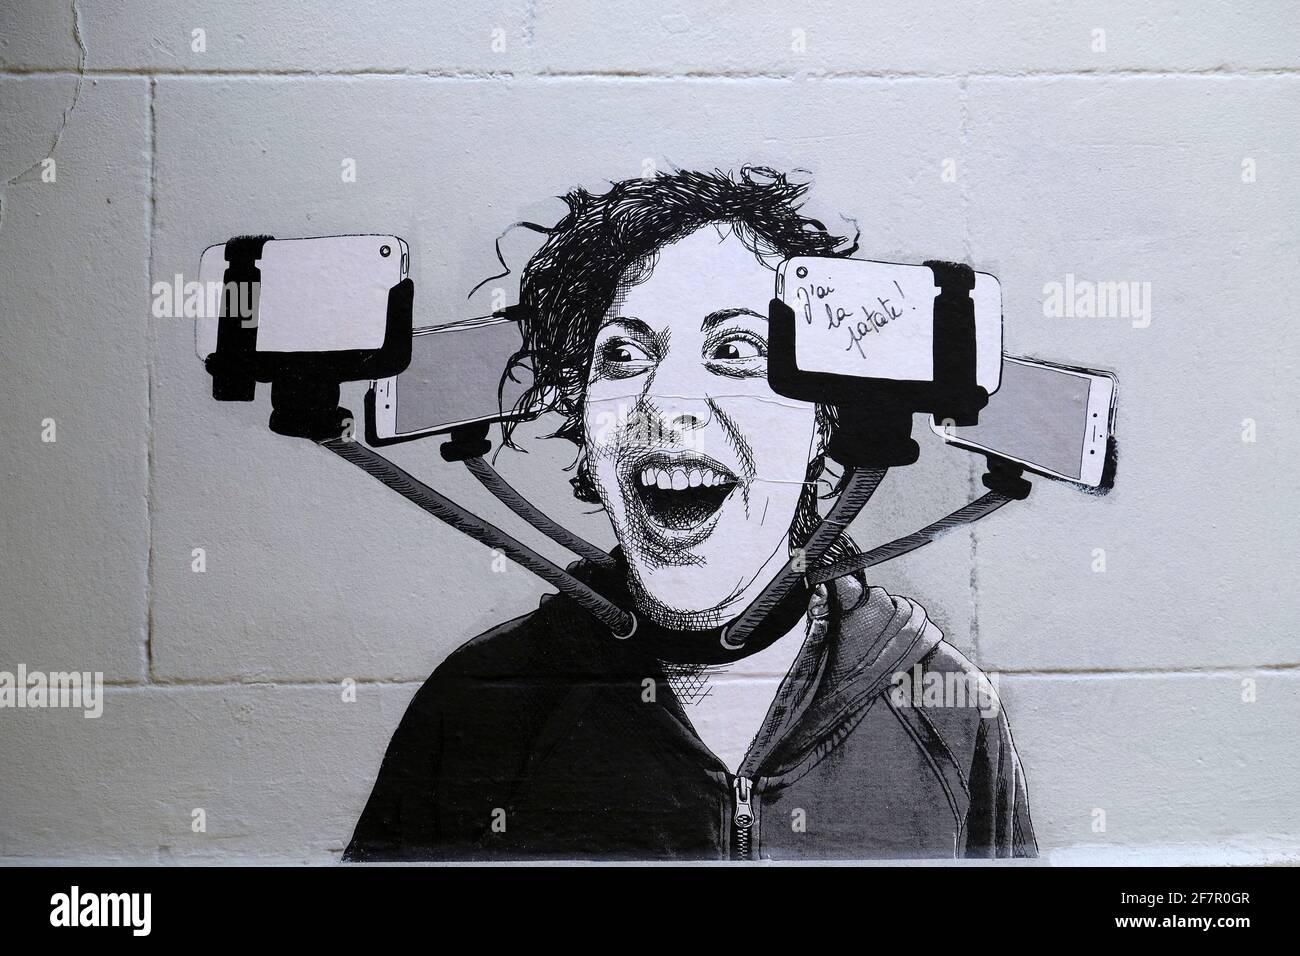 21.09.2019, Bruessel, Belgien - Wandmalerei eines unbekannten Kuenstlers im Stile Banksys in der naehe der place du Jeu du Balle / Vossenplein im Quar Foto Stock